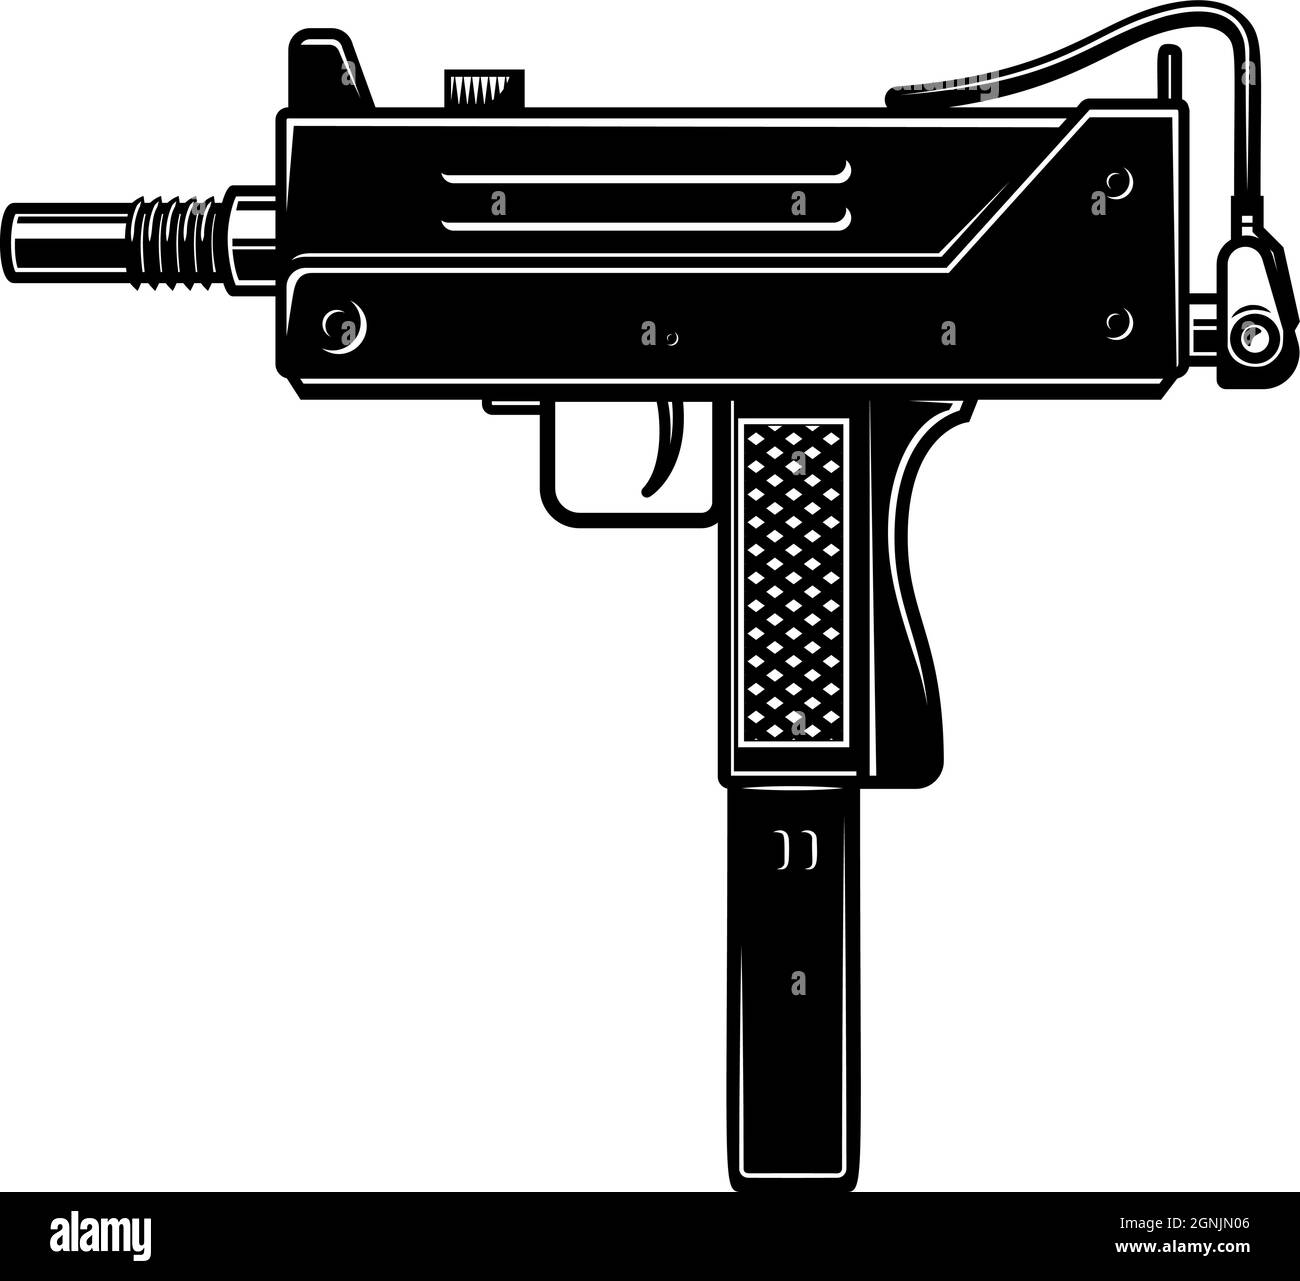 Illustration der automatischen Uzi-Pistole im monochromen Stil. Gestaltungselement für Logo, Etikett, Schild, Plakat. Vektorgrafik Stock Vektor